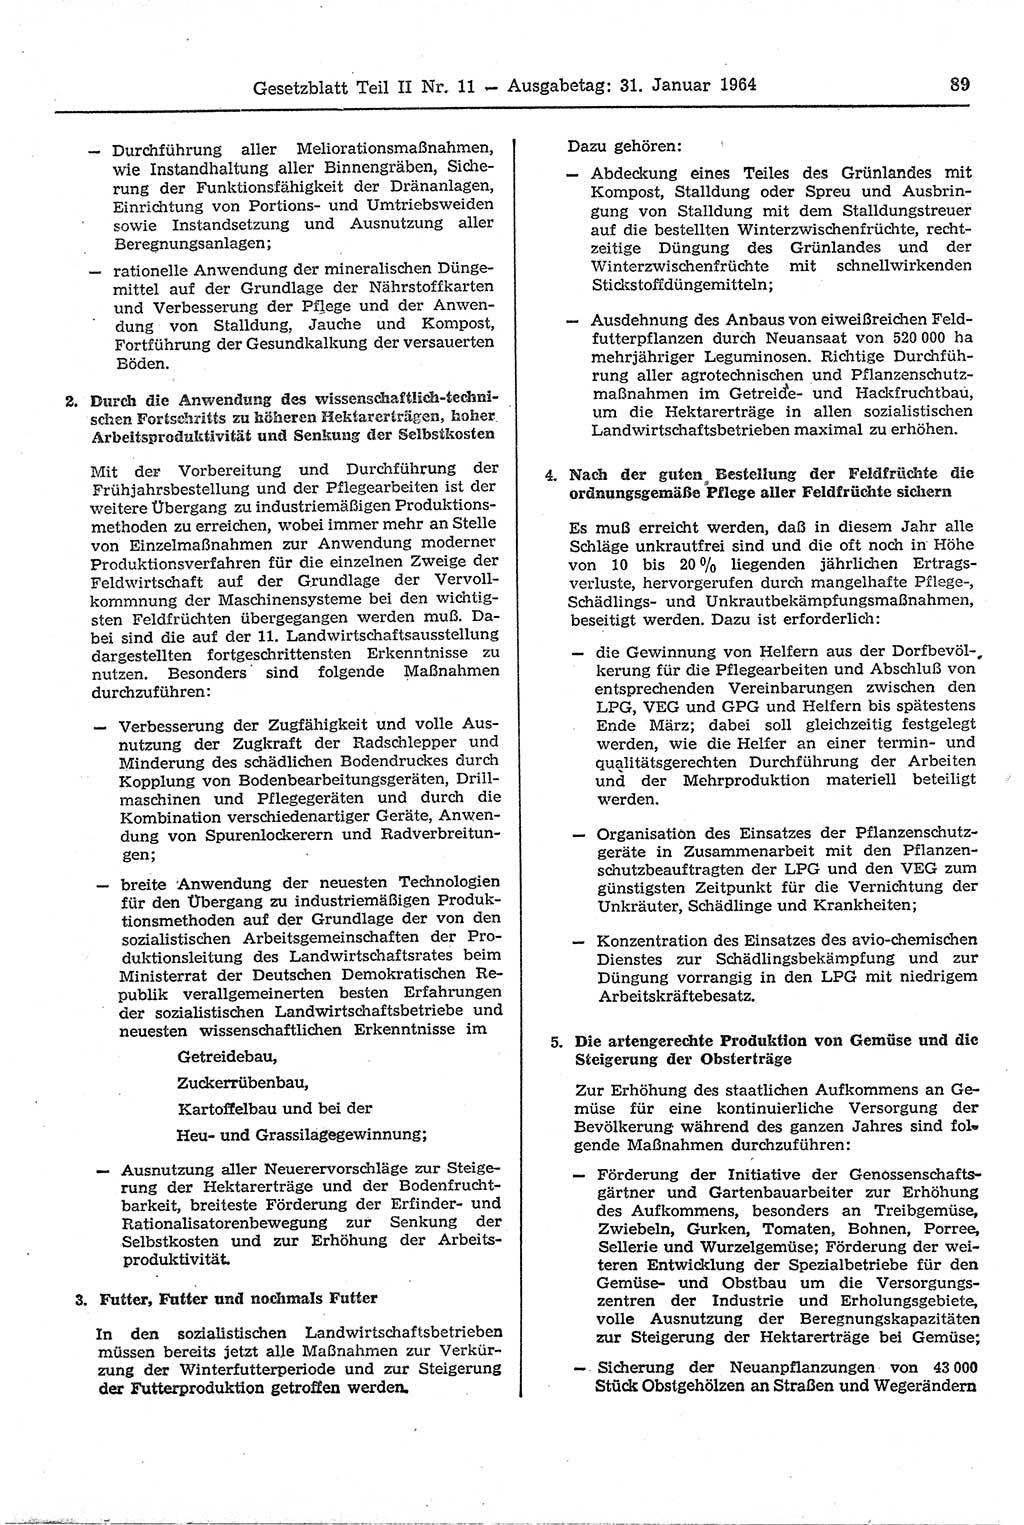 Gesetzblatt (GBl.) der Deutschen Demokratischen Republik (DDR) Teil ⅠⅠ 1964, Seite 89 (GBl. DDR ⅠⅠ 1964, S. 89)